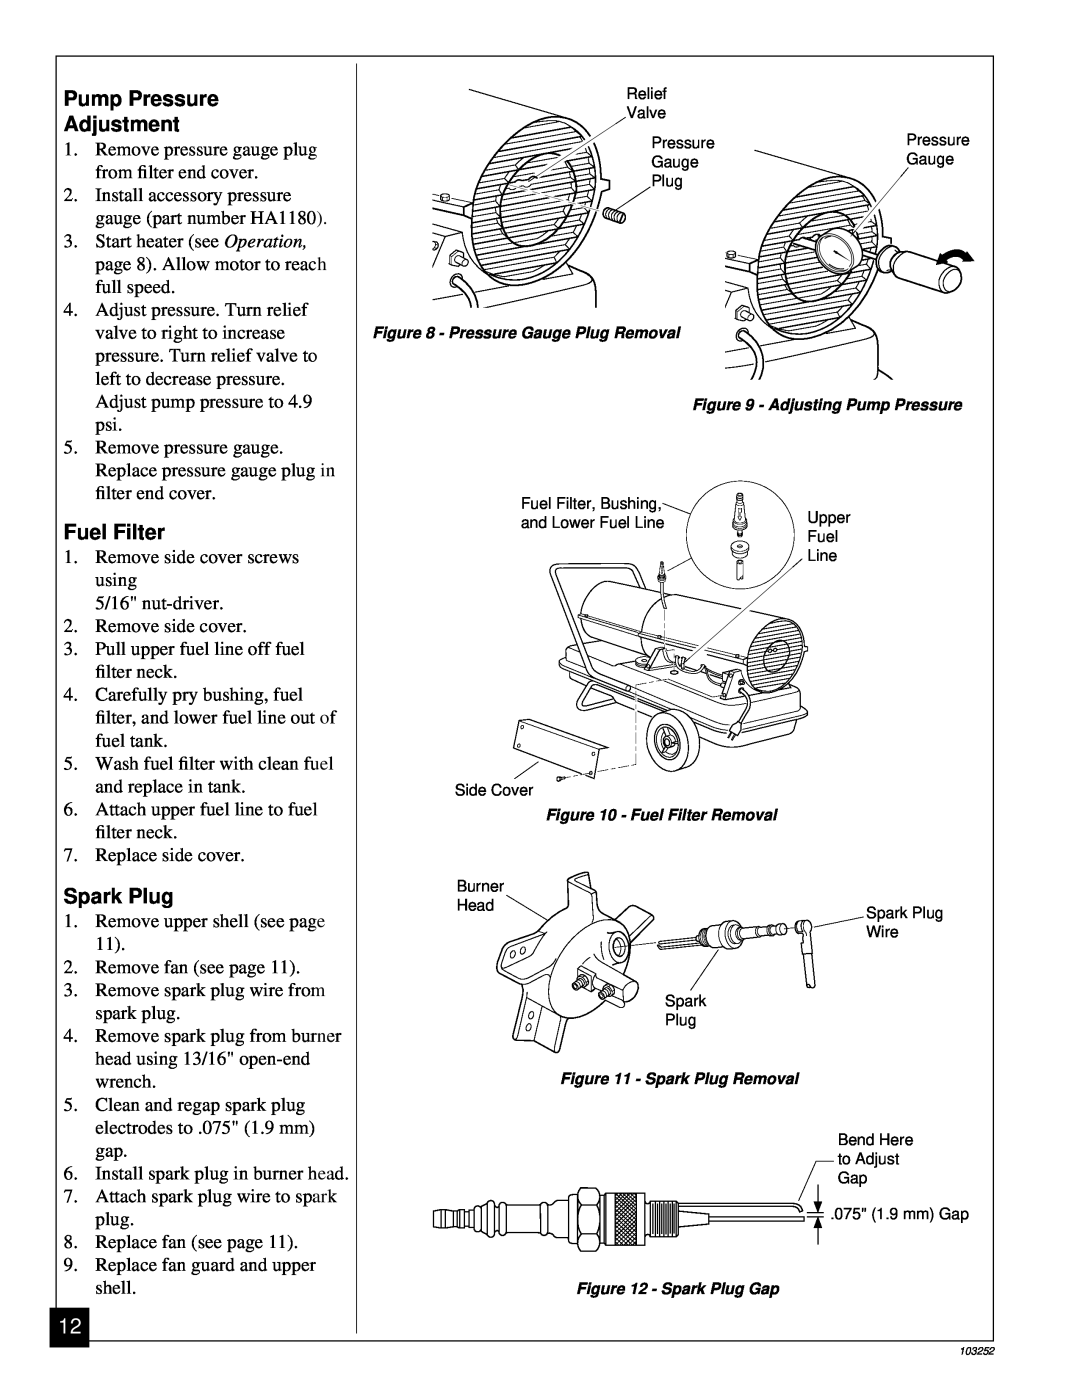 Desa RK150 owner manual Pump Pressure, Adjustment, Fuel Filter, Spark Plug, shell 